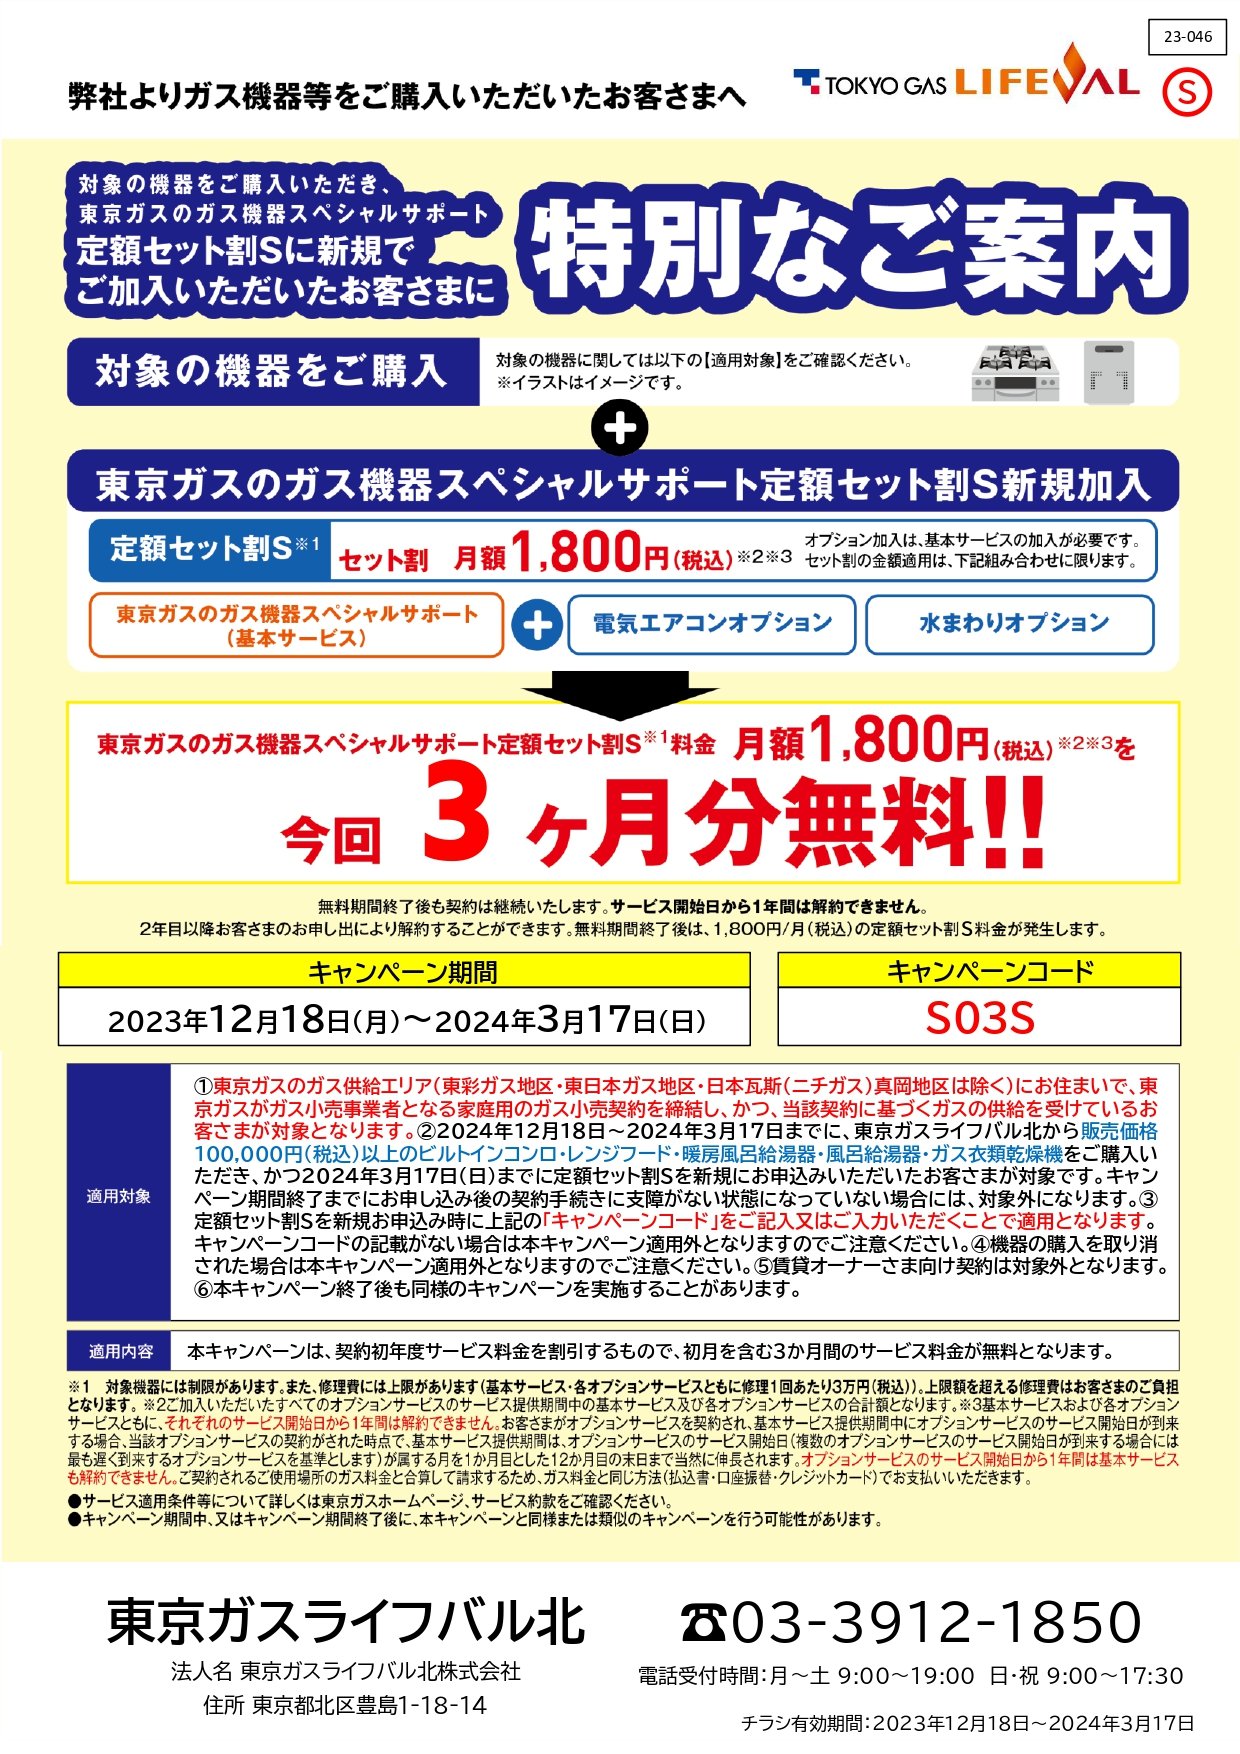 東京ガスの「ガス機器スペシャルサポート」キャンペーン開催中!!